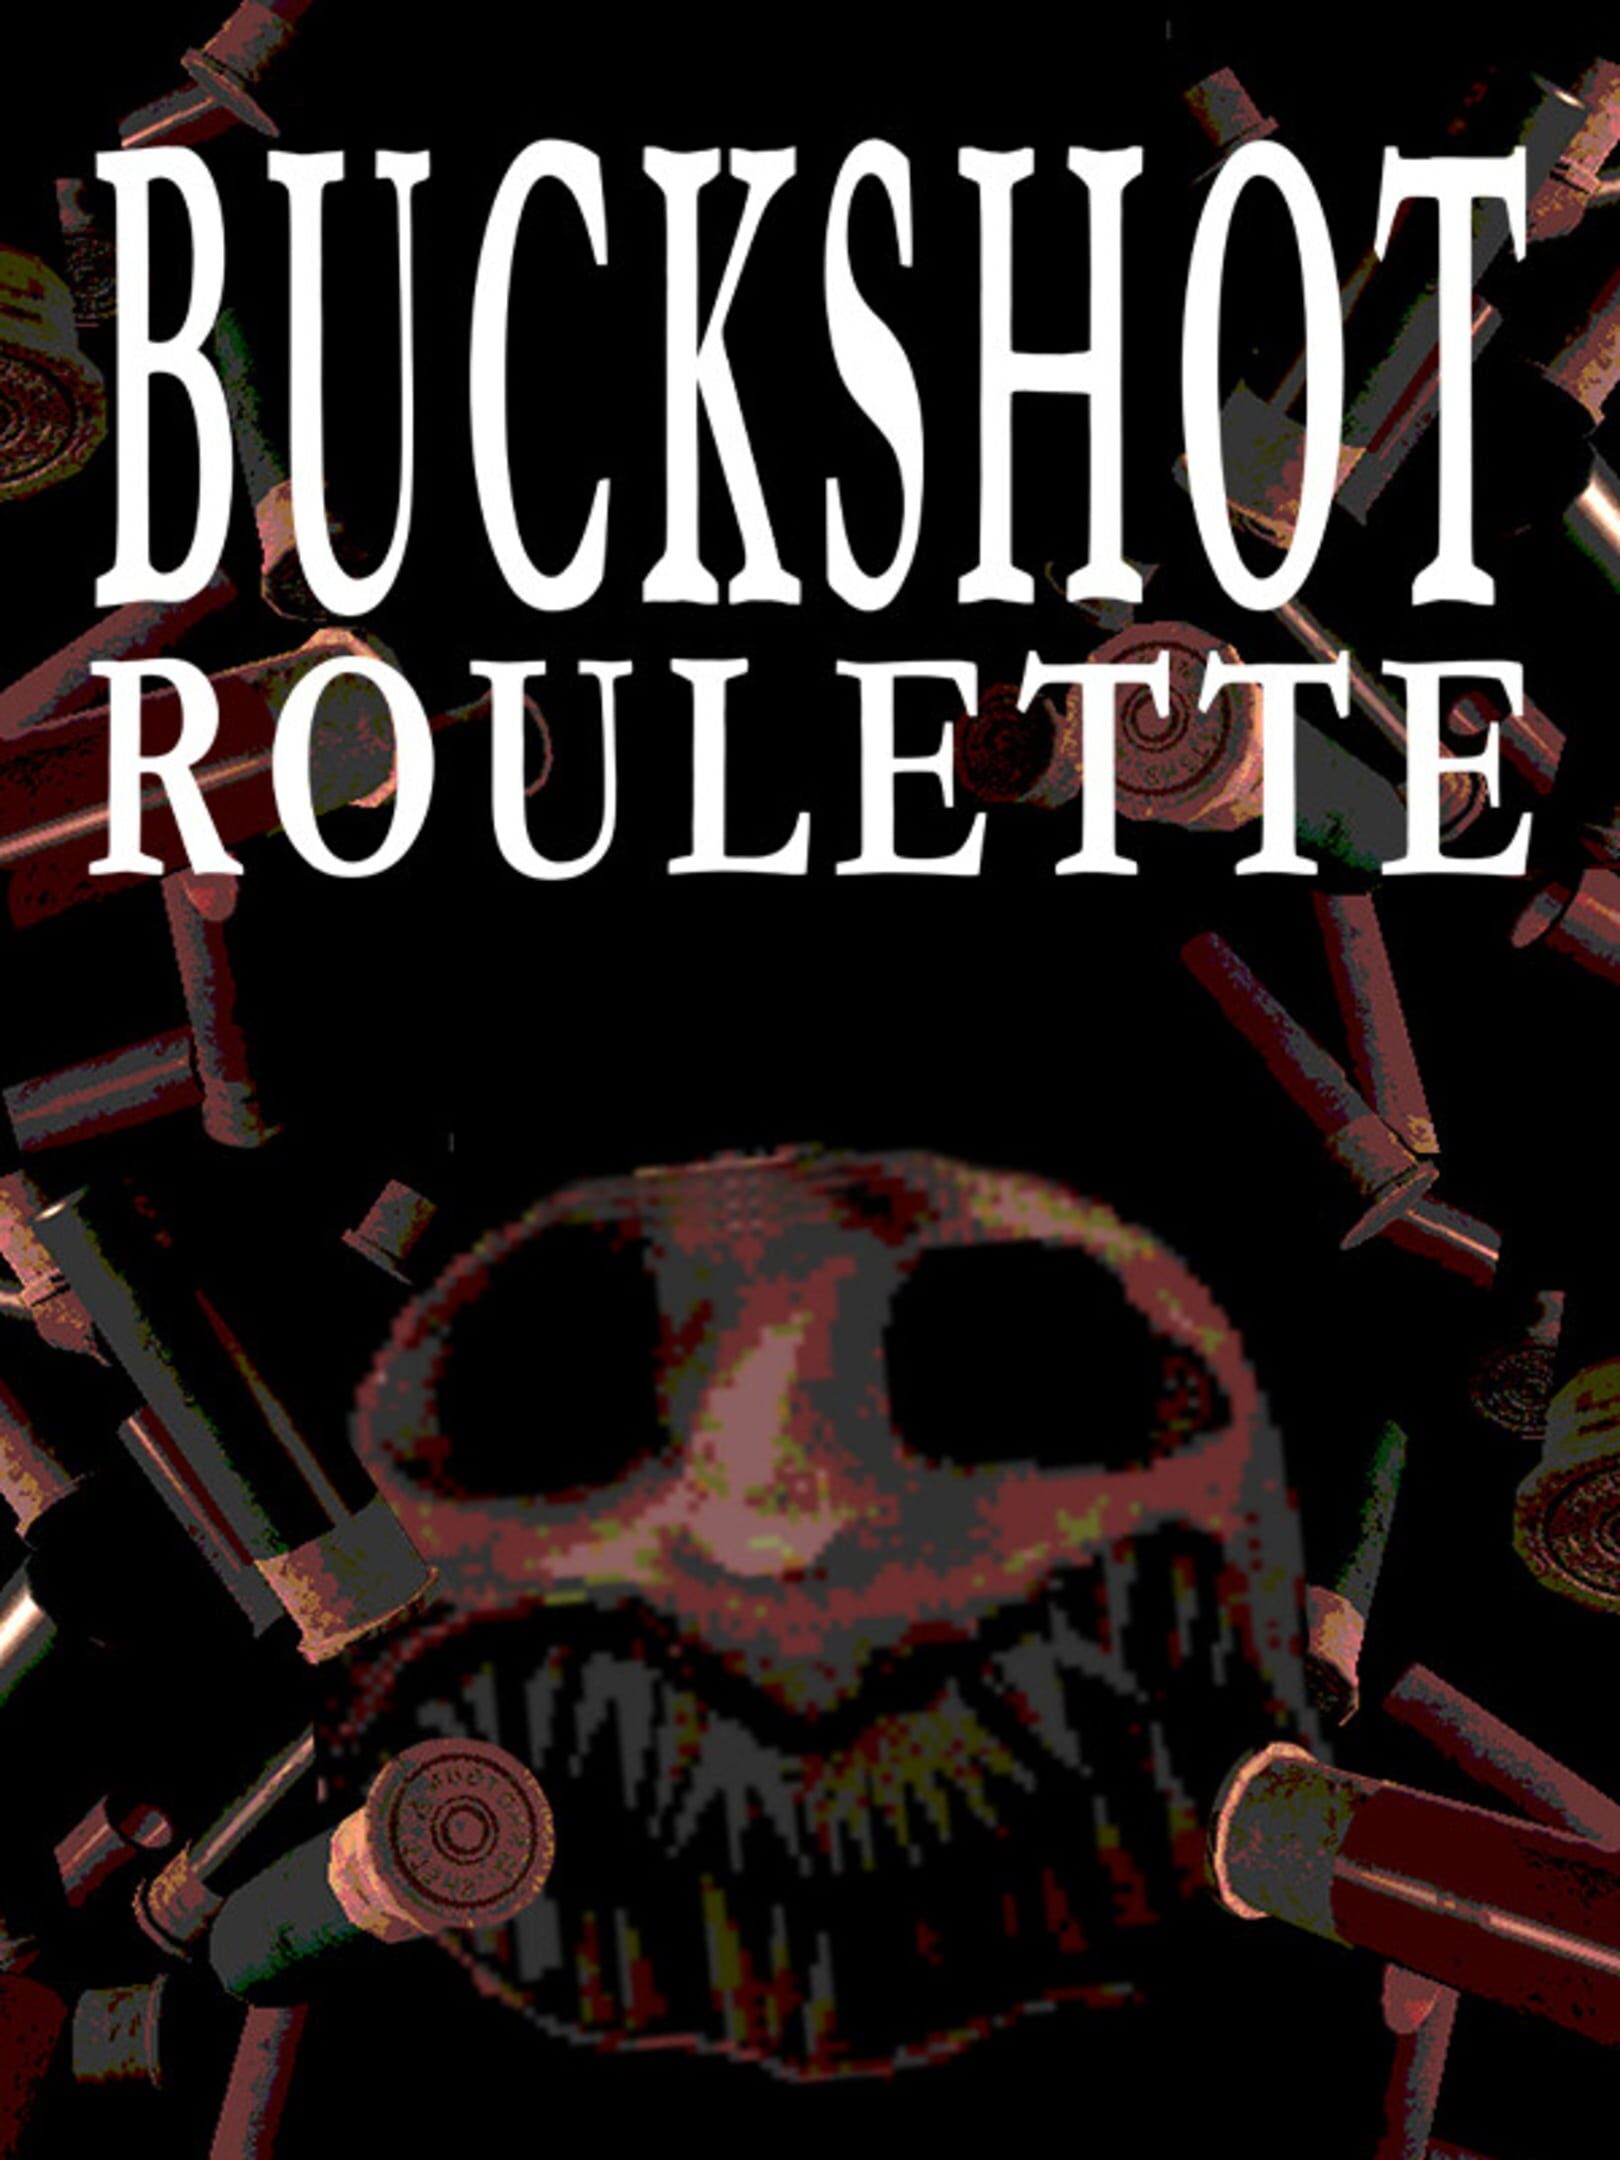 jaquette du jeu vidéo Buckshot Roulette